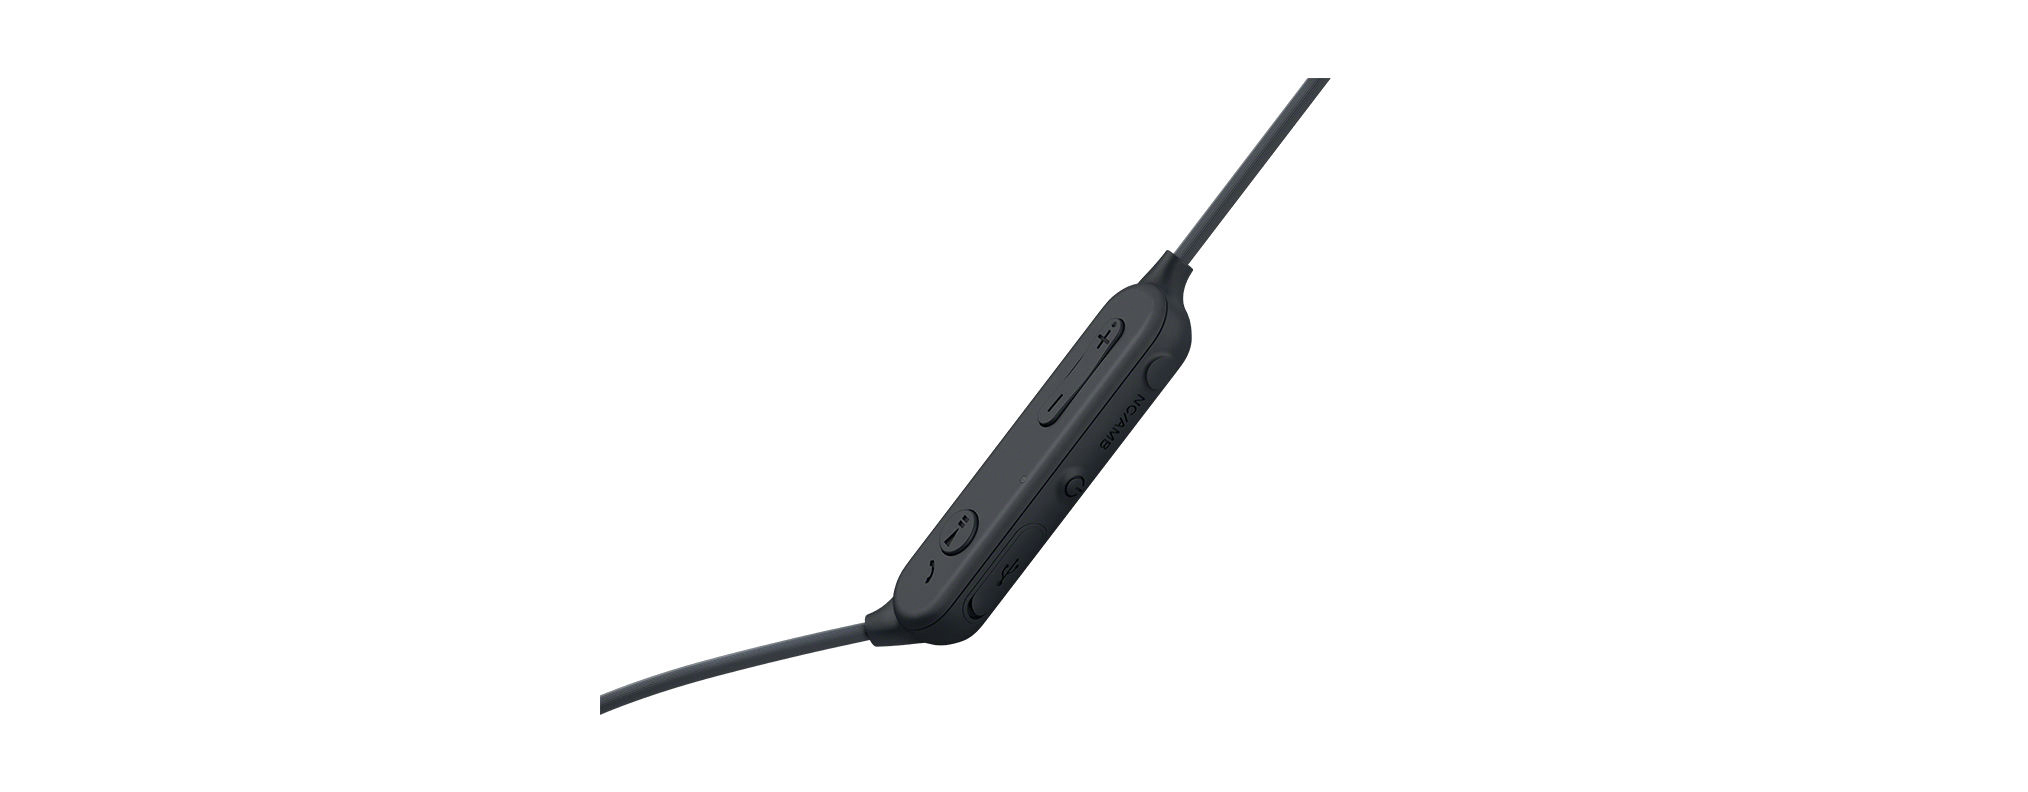 Bluetooth Schwarz Kopfhörer In-ear SONY WI-SP600N,